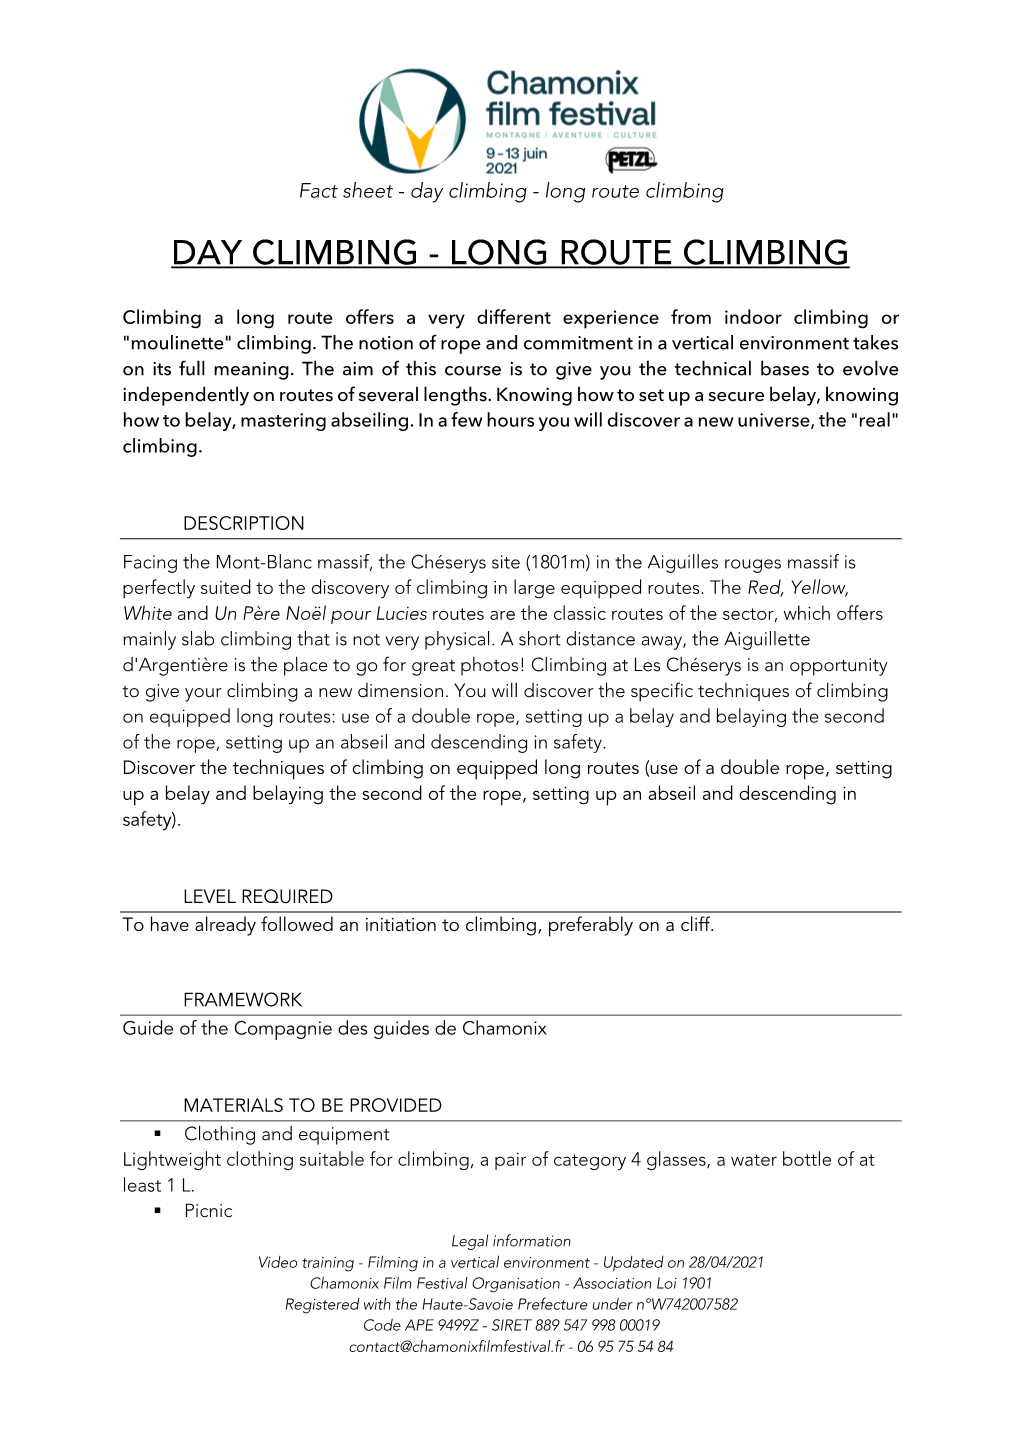 Day Climbing - Long Route Climbing